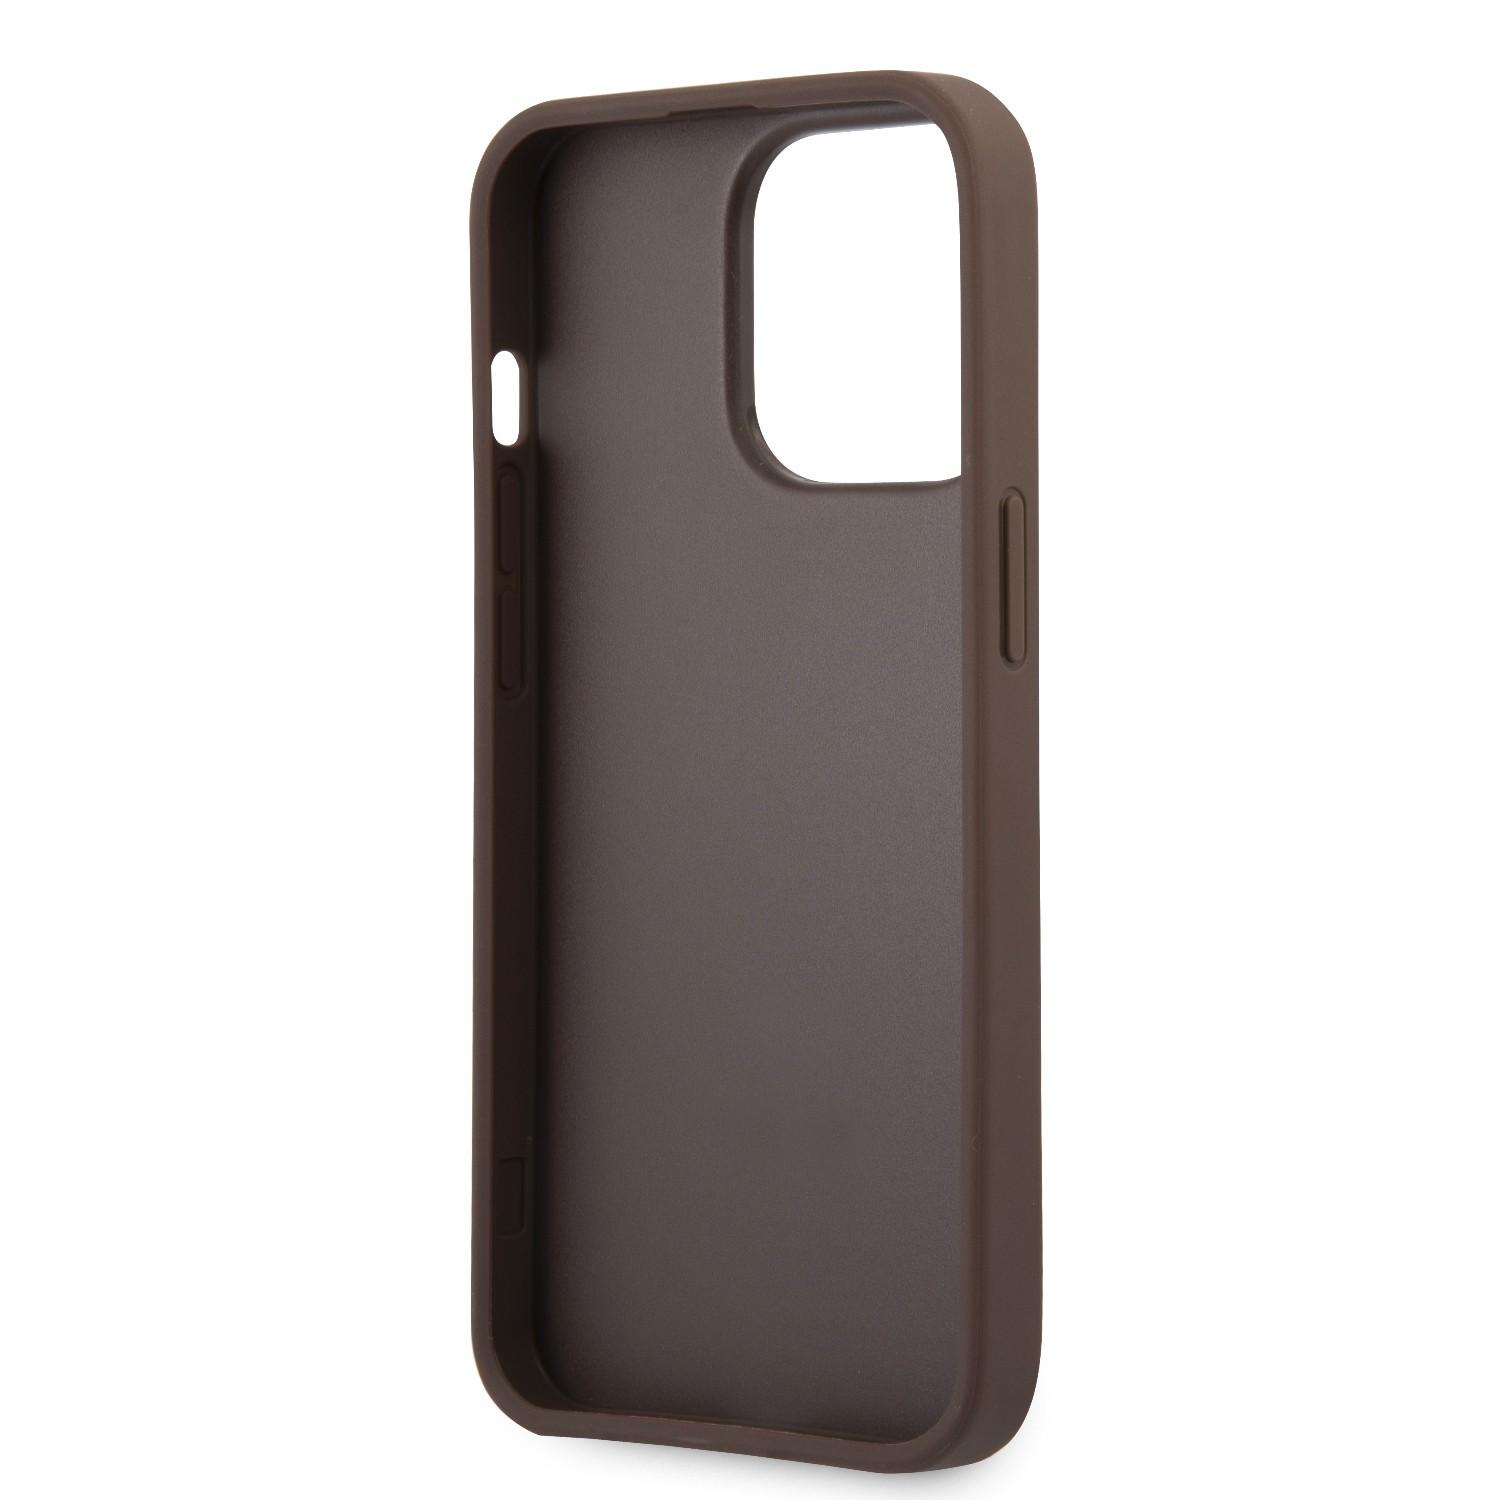 كفر ايفون 13 برو ماكس جلد بني جيس Guess 4G PU Leather Case With Printed Stripe For iPhone 13 Pro Max Brown - cG9zdDoxMzgzMDE0